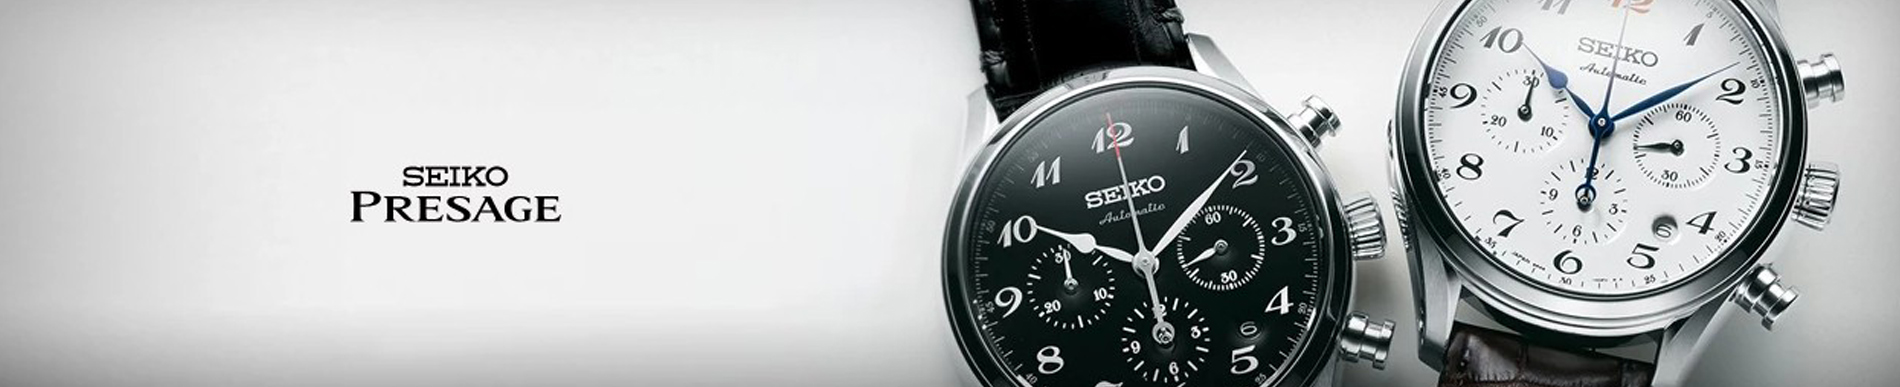 Zegarki Seiko - szeroki wybór modeli w promocyjnych cenach 